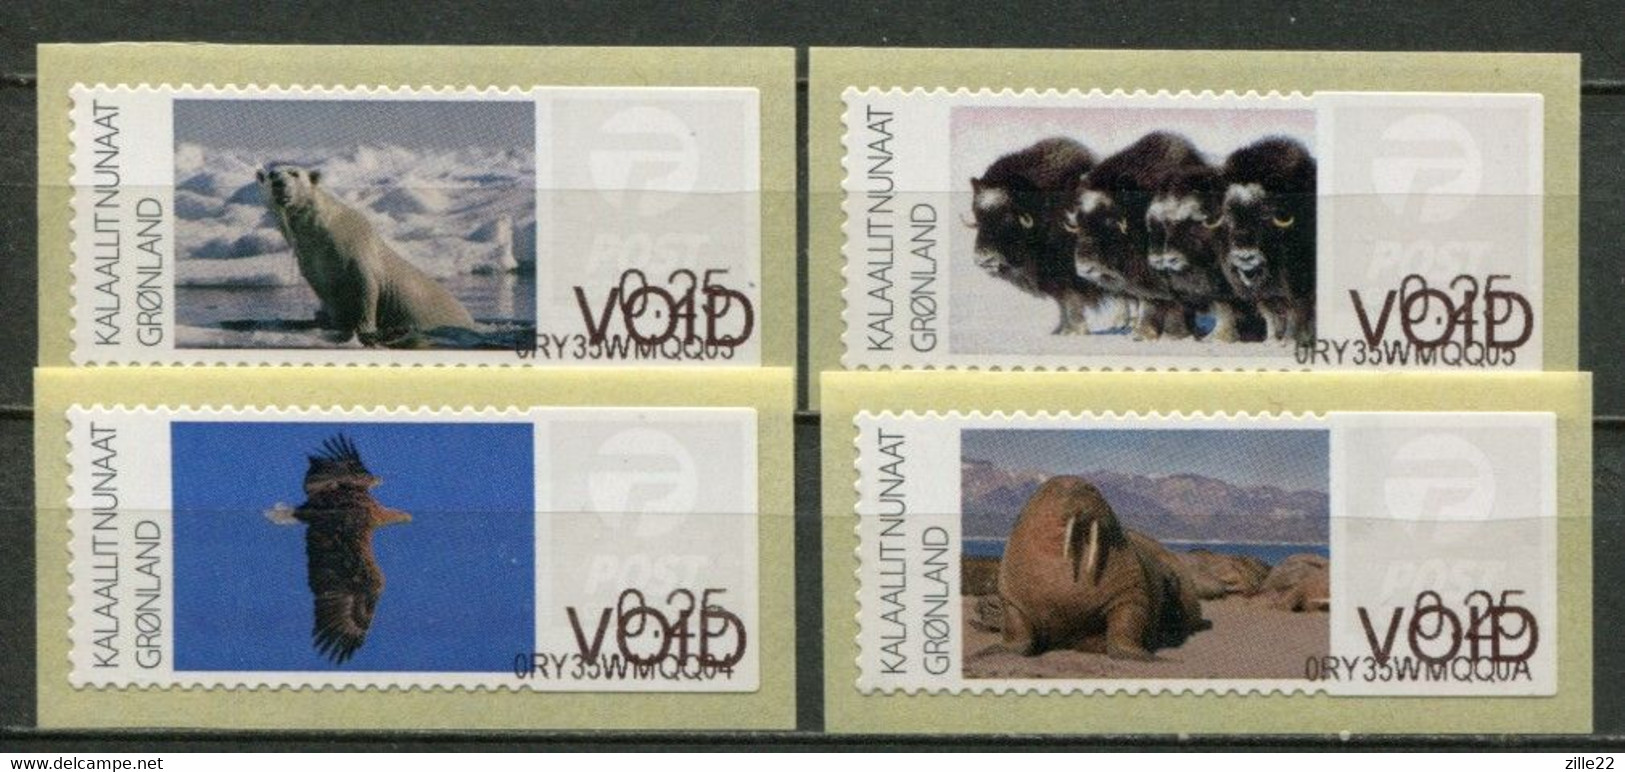 Grönland Greenland Mi# ATM 5-8 Arctic Fauna - Postfrisch/MNH - Test (VOID) Stamps - Machine Stamps